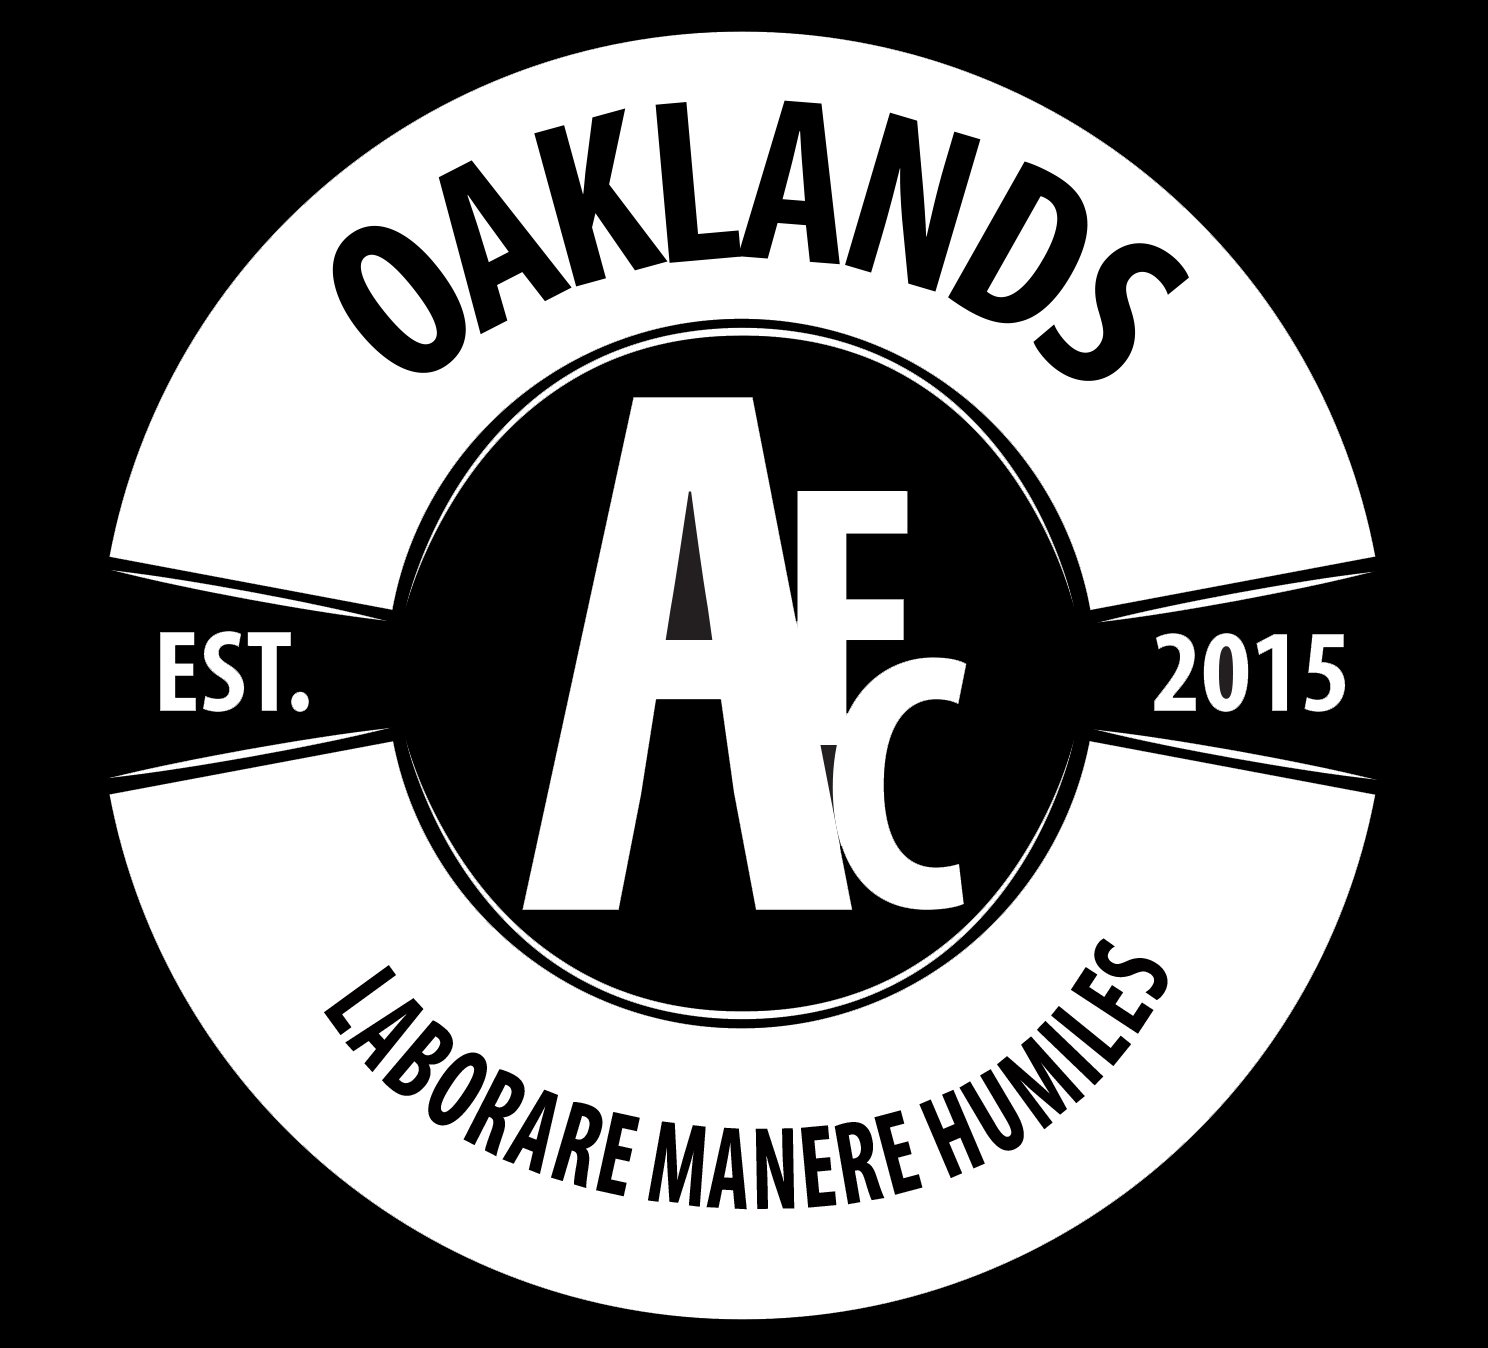 AFC Oaklands